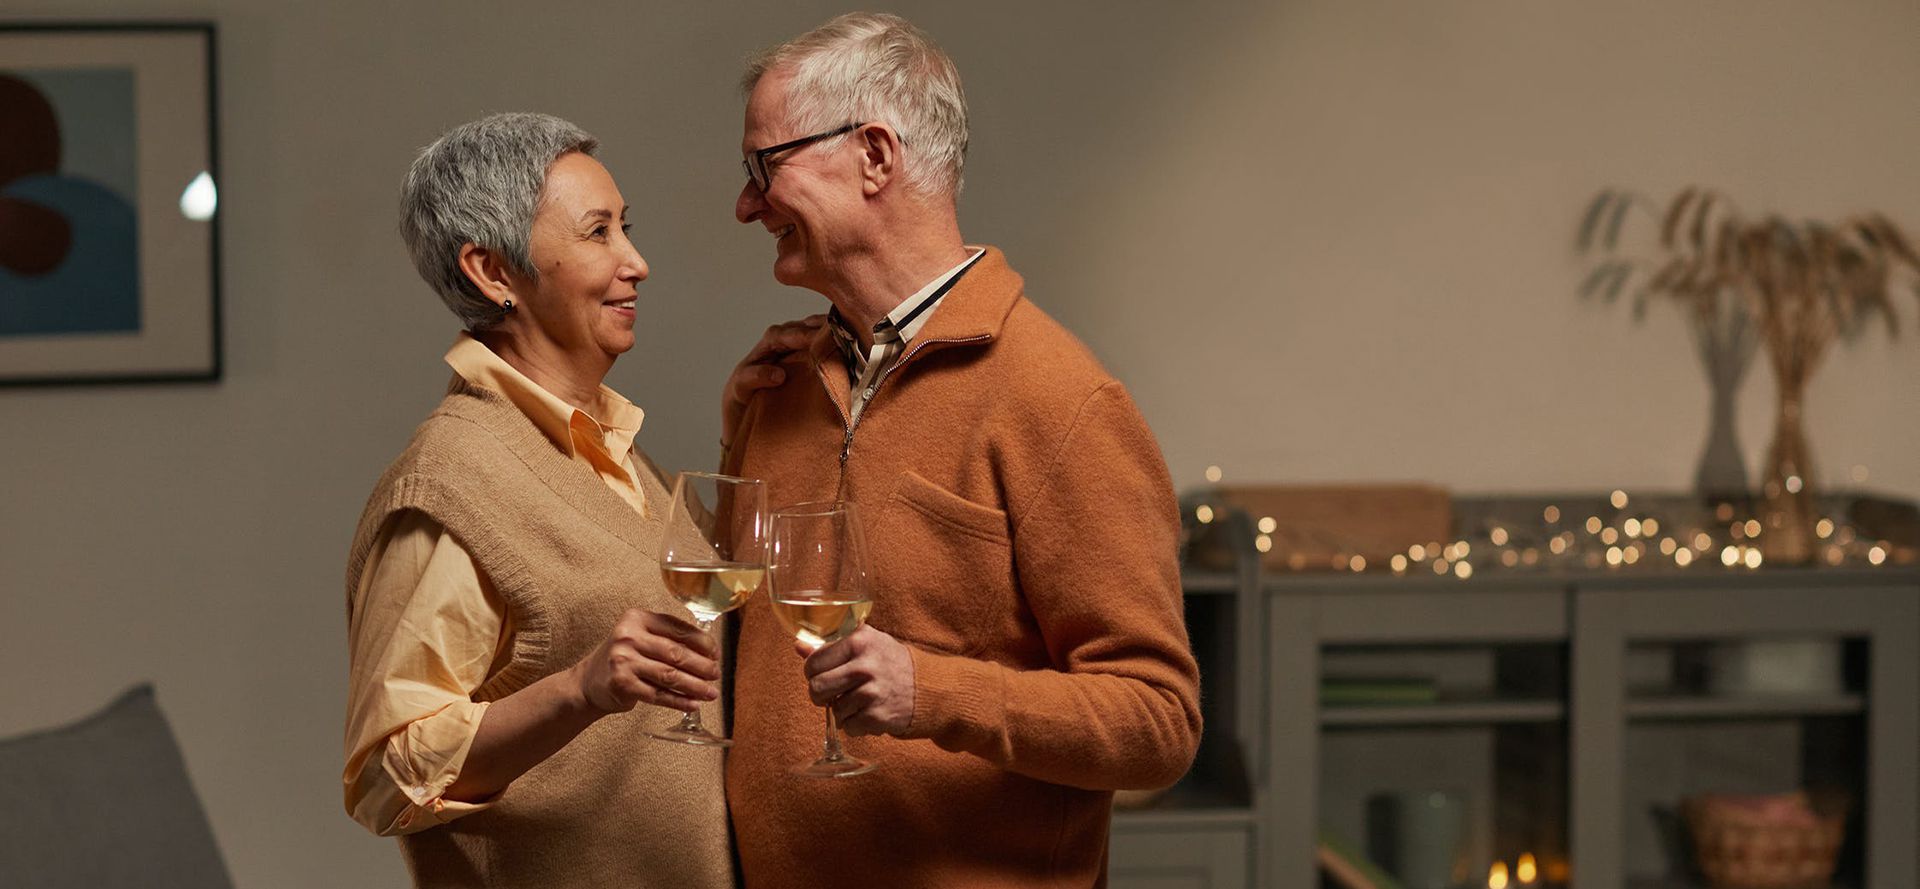 Personnes âgées dansant avec un verre à vin lors d'une rencontre.